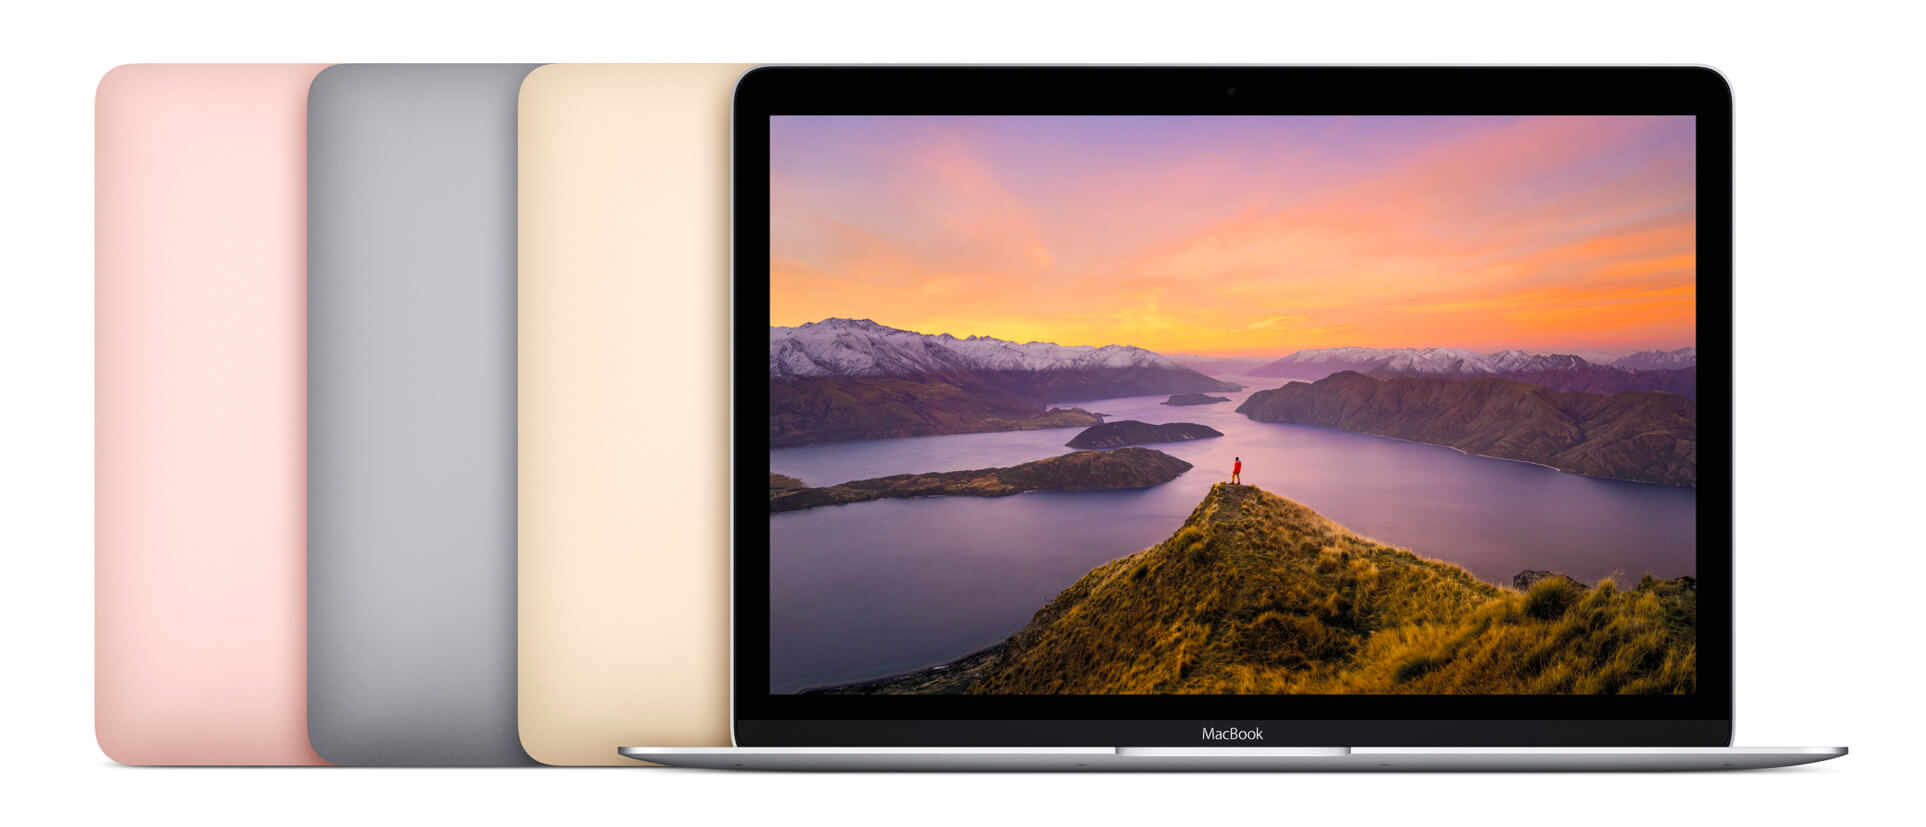 MacBook New 12